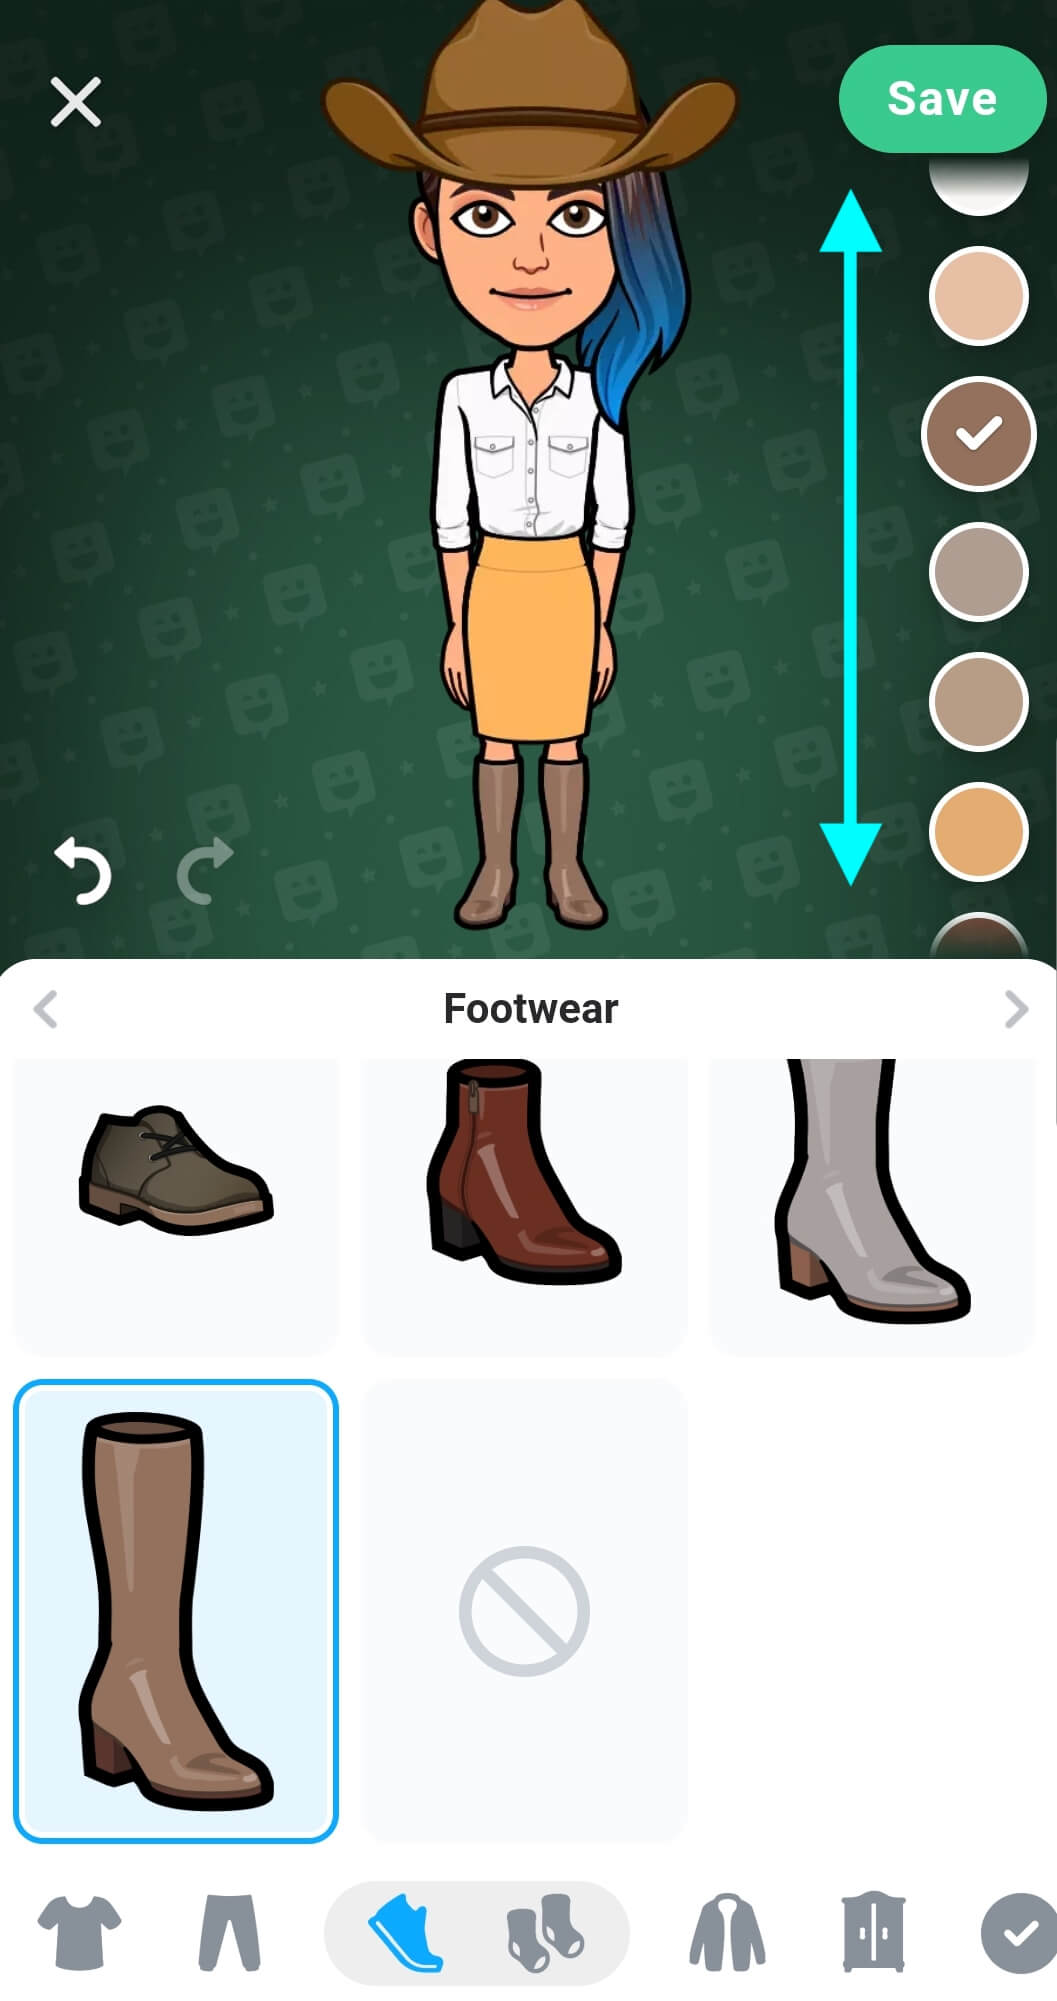 El avatar ahora lleva botas, la paleta de colores que está a la derecha tiene flechas que indican que se puede deslizar hacia arriba o abajo para ver más opciones de color